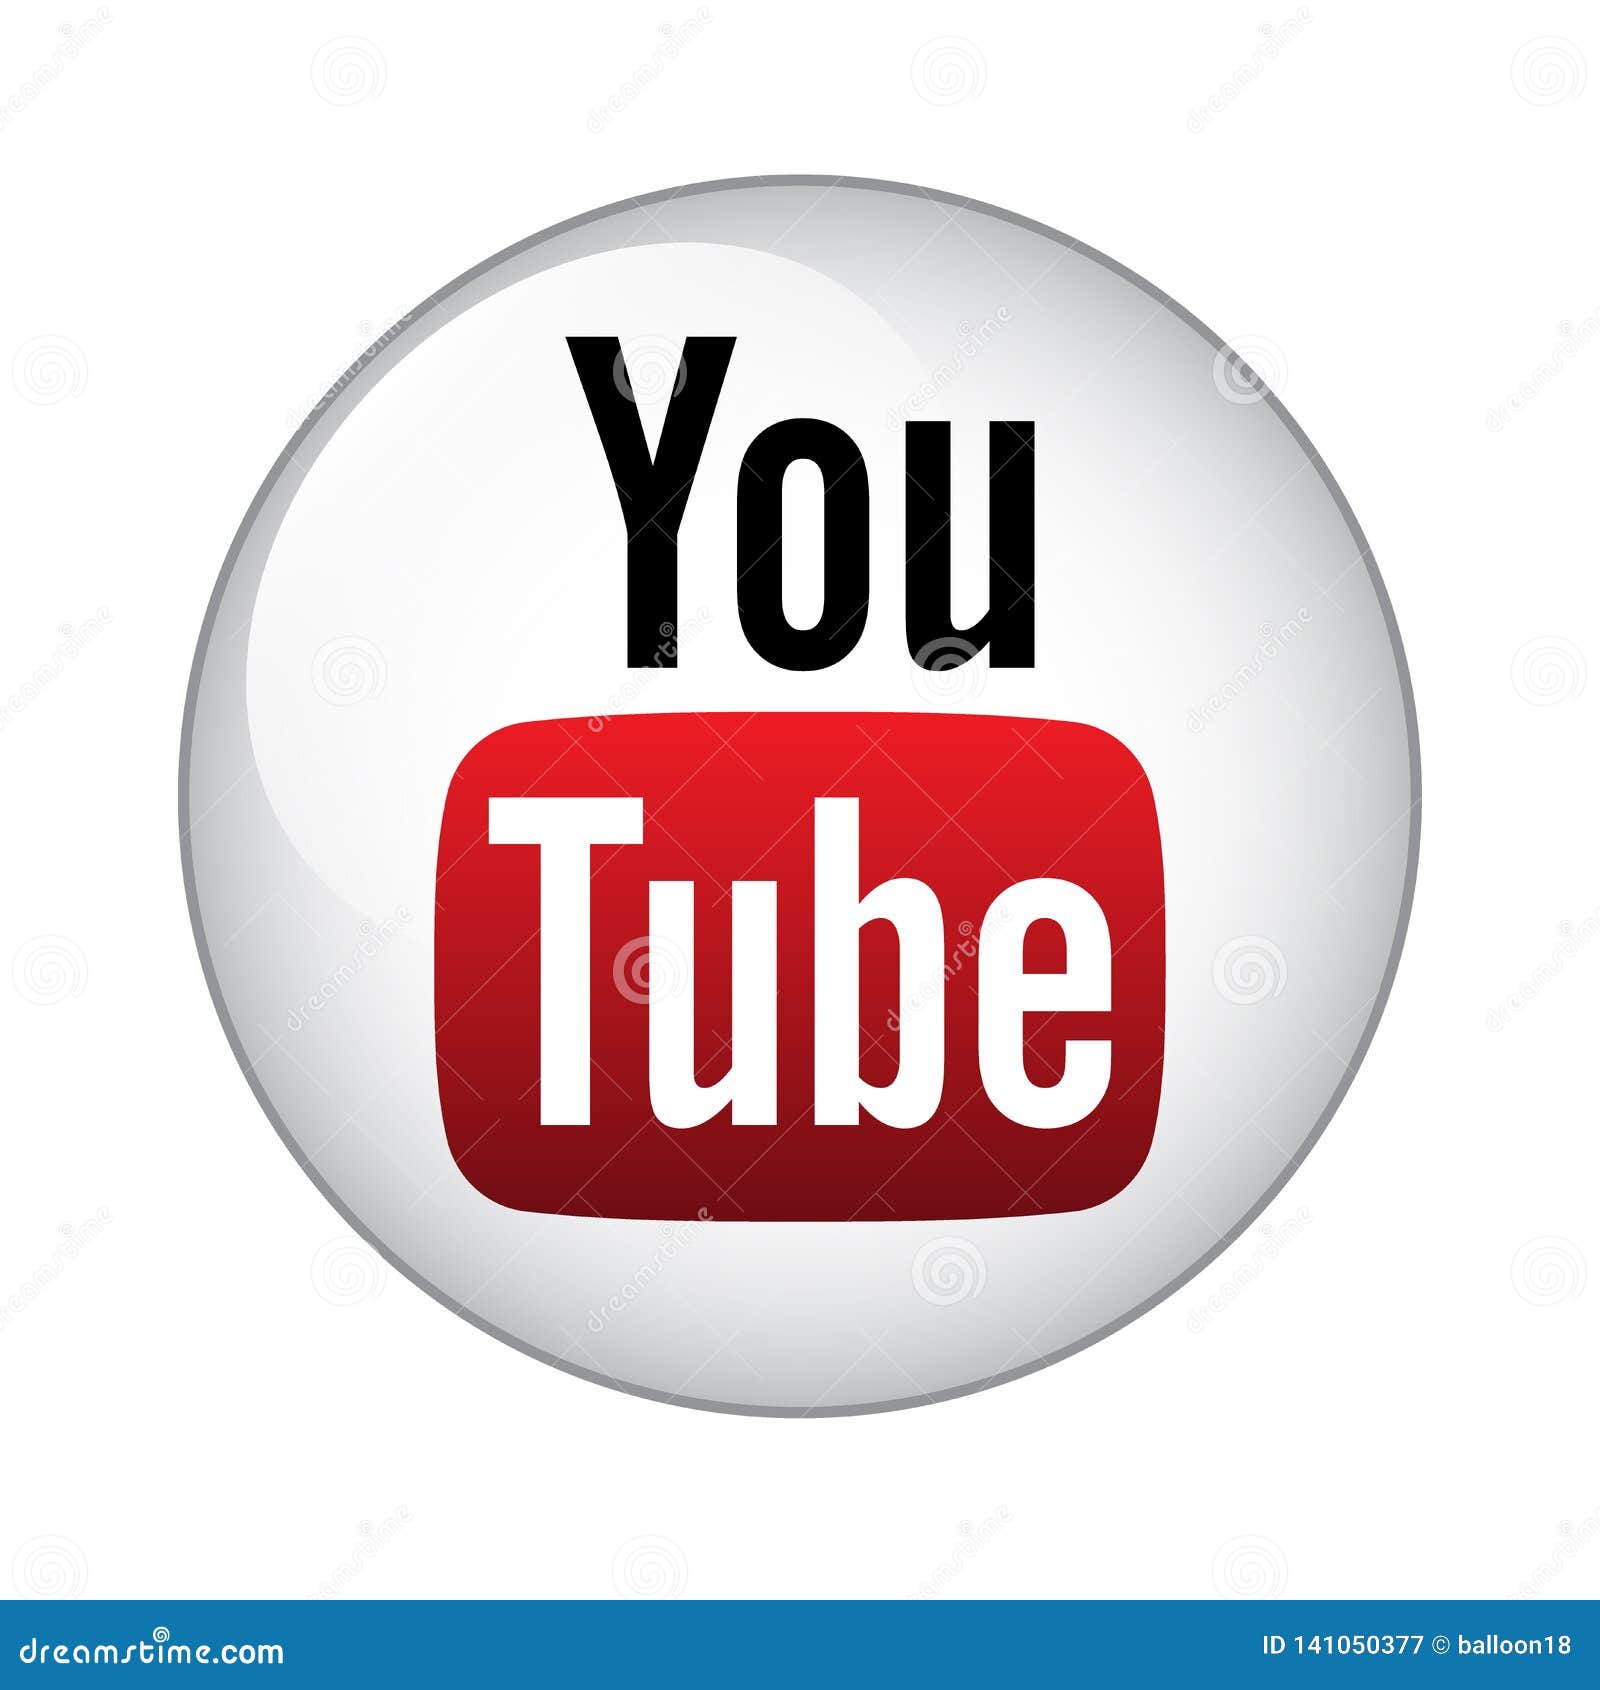 Biểu tượng logo Youtube là một trong những biểu tượng được sử dụng trên các trang web và ứng dụng phổ biến nhất. Nếu nhìn thấy biểu tượng này trên trang web hay trên điện thoại của mình, hãy click vào nó để tìm hiểu thêm về YouTube và các thông tin liên quan đến nó.